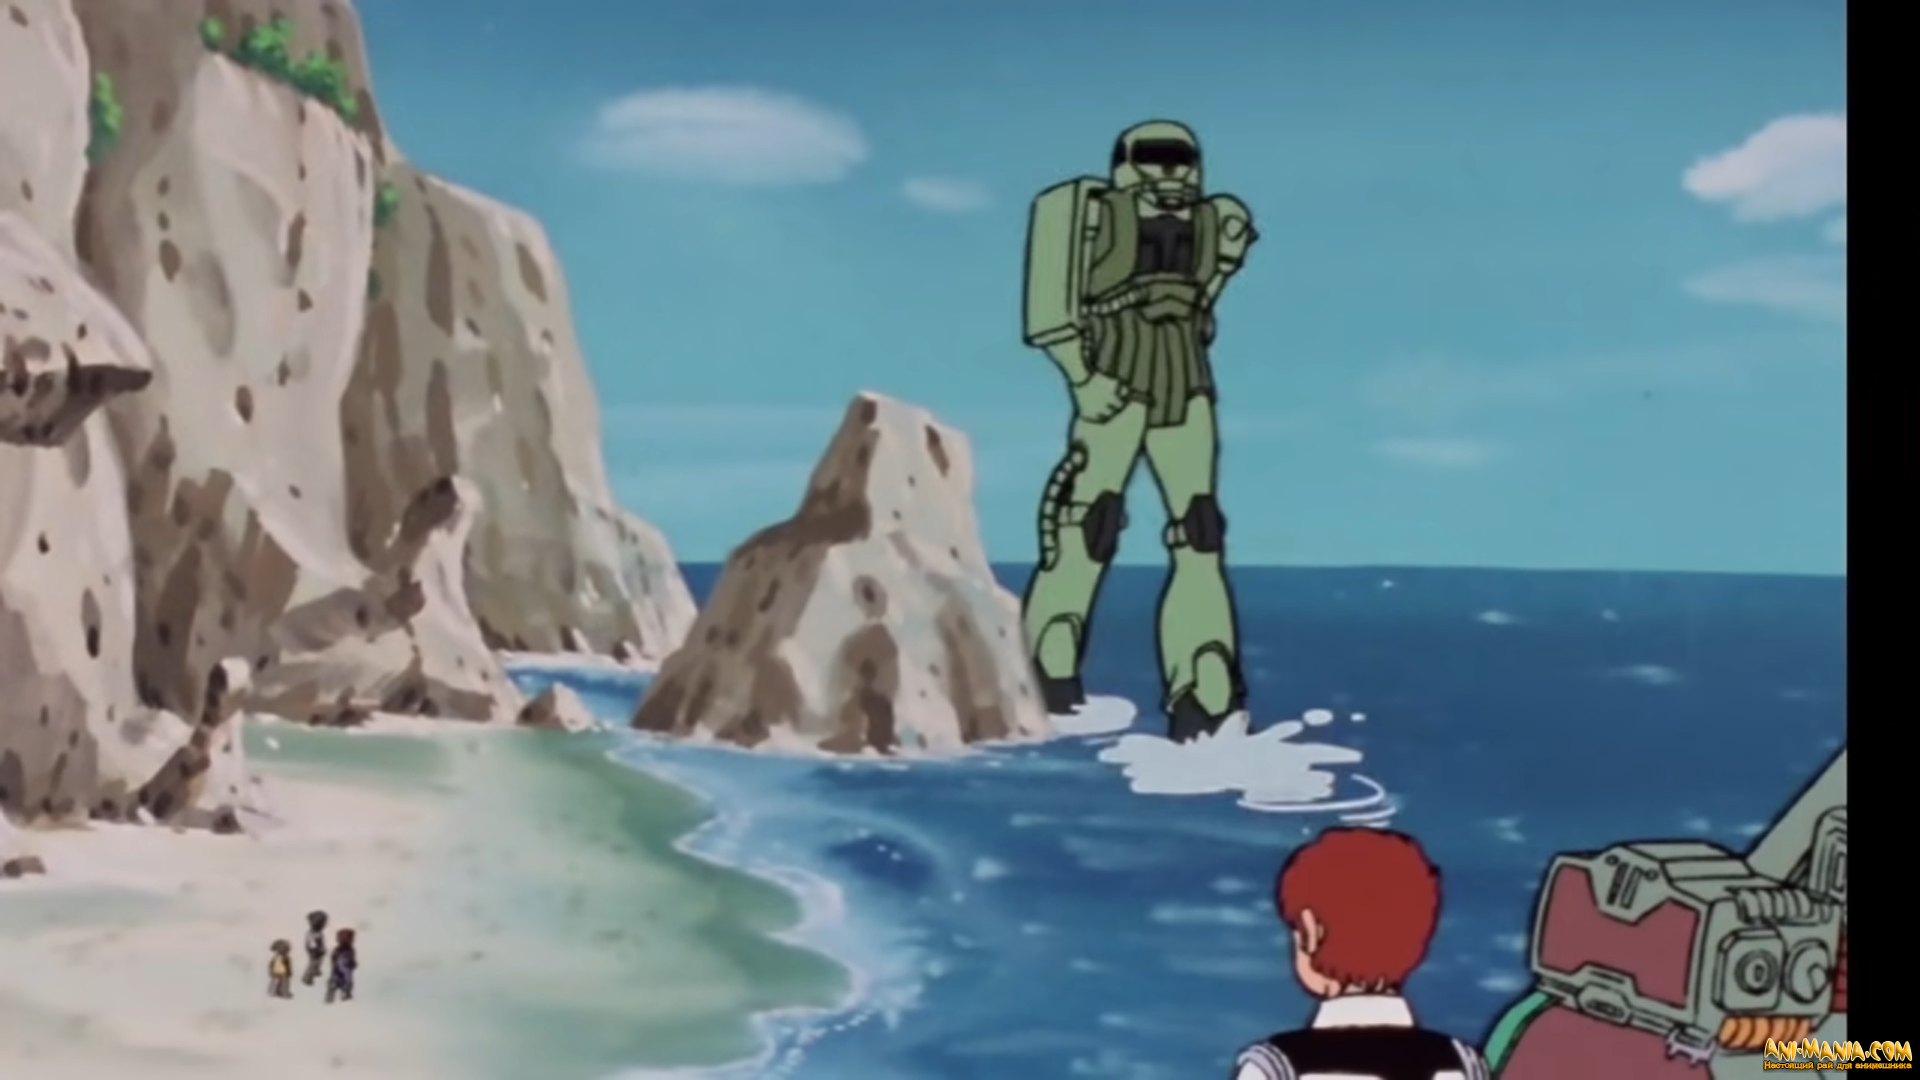 «Мобильный воин Гандам: Остров Кукуруз Доана» — дата выхода, авторы и тизер аниме-фильма по одному из эпизодов оригинального сериала